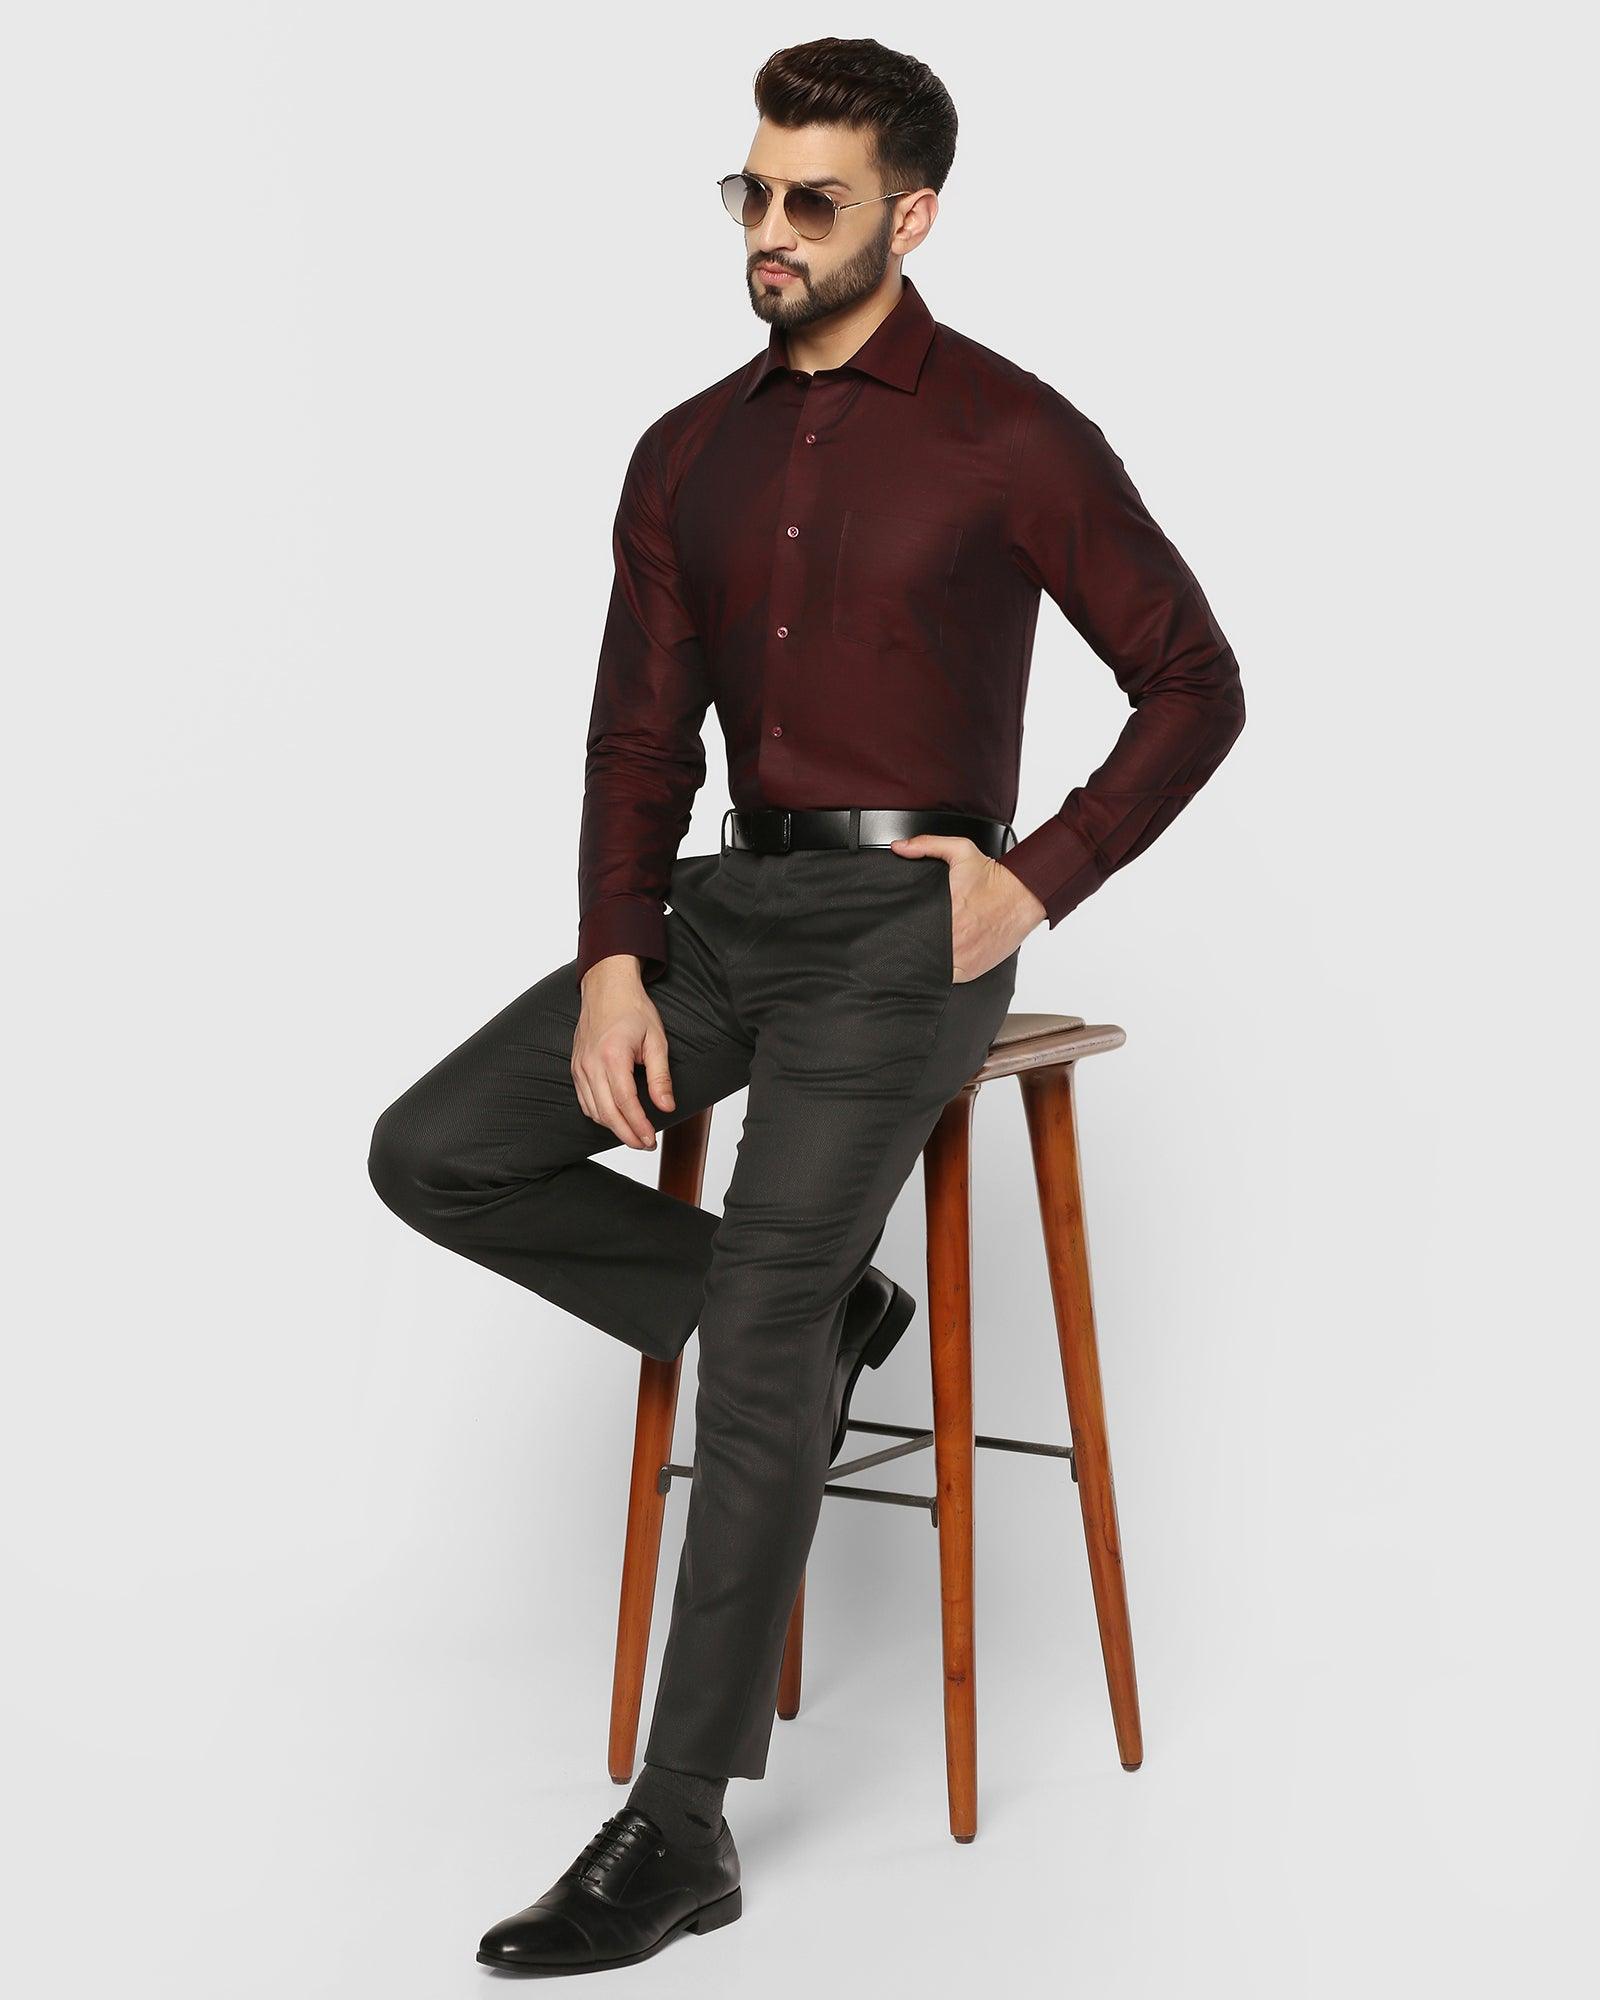 Linen Formal Maroon Solid Shirt - Dino